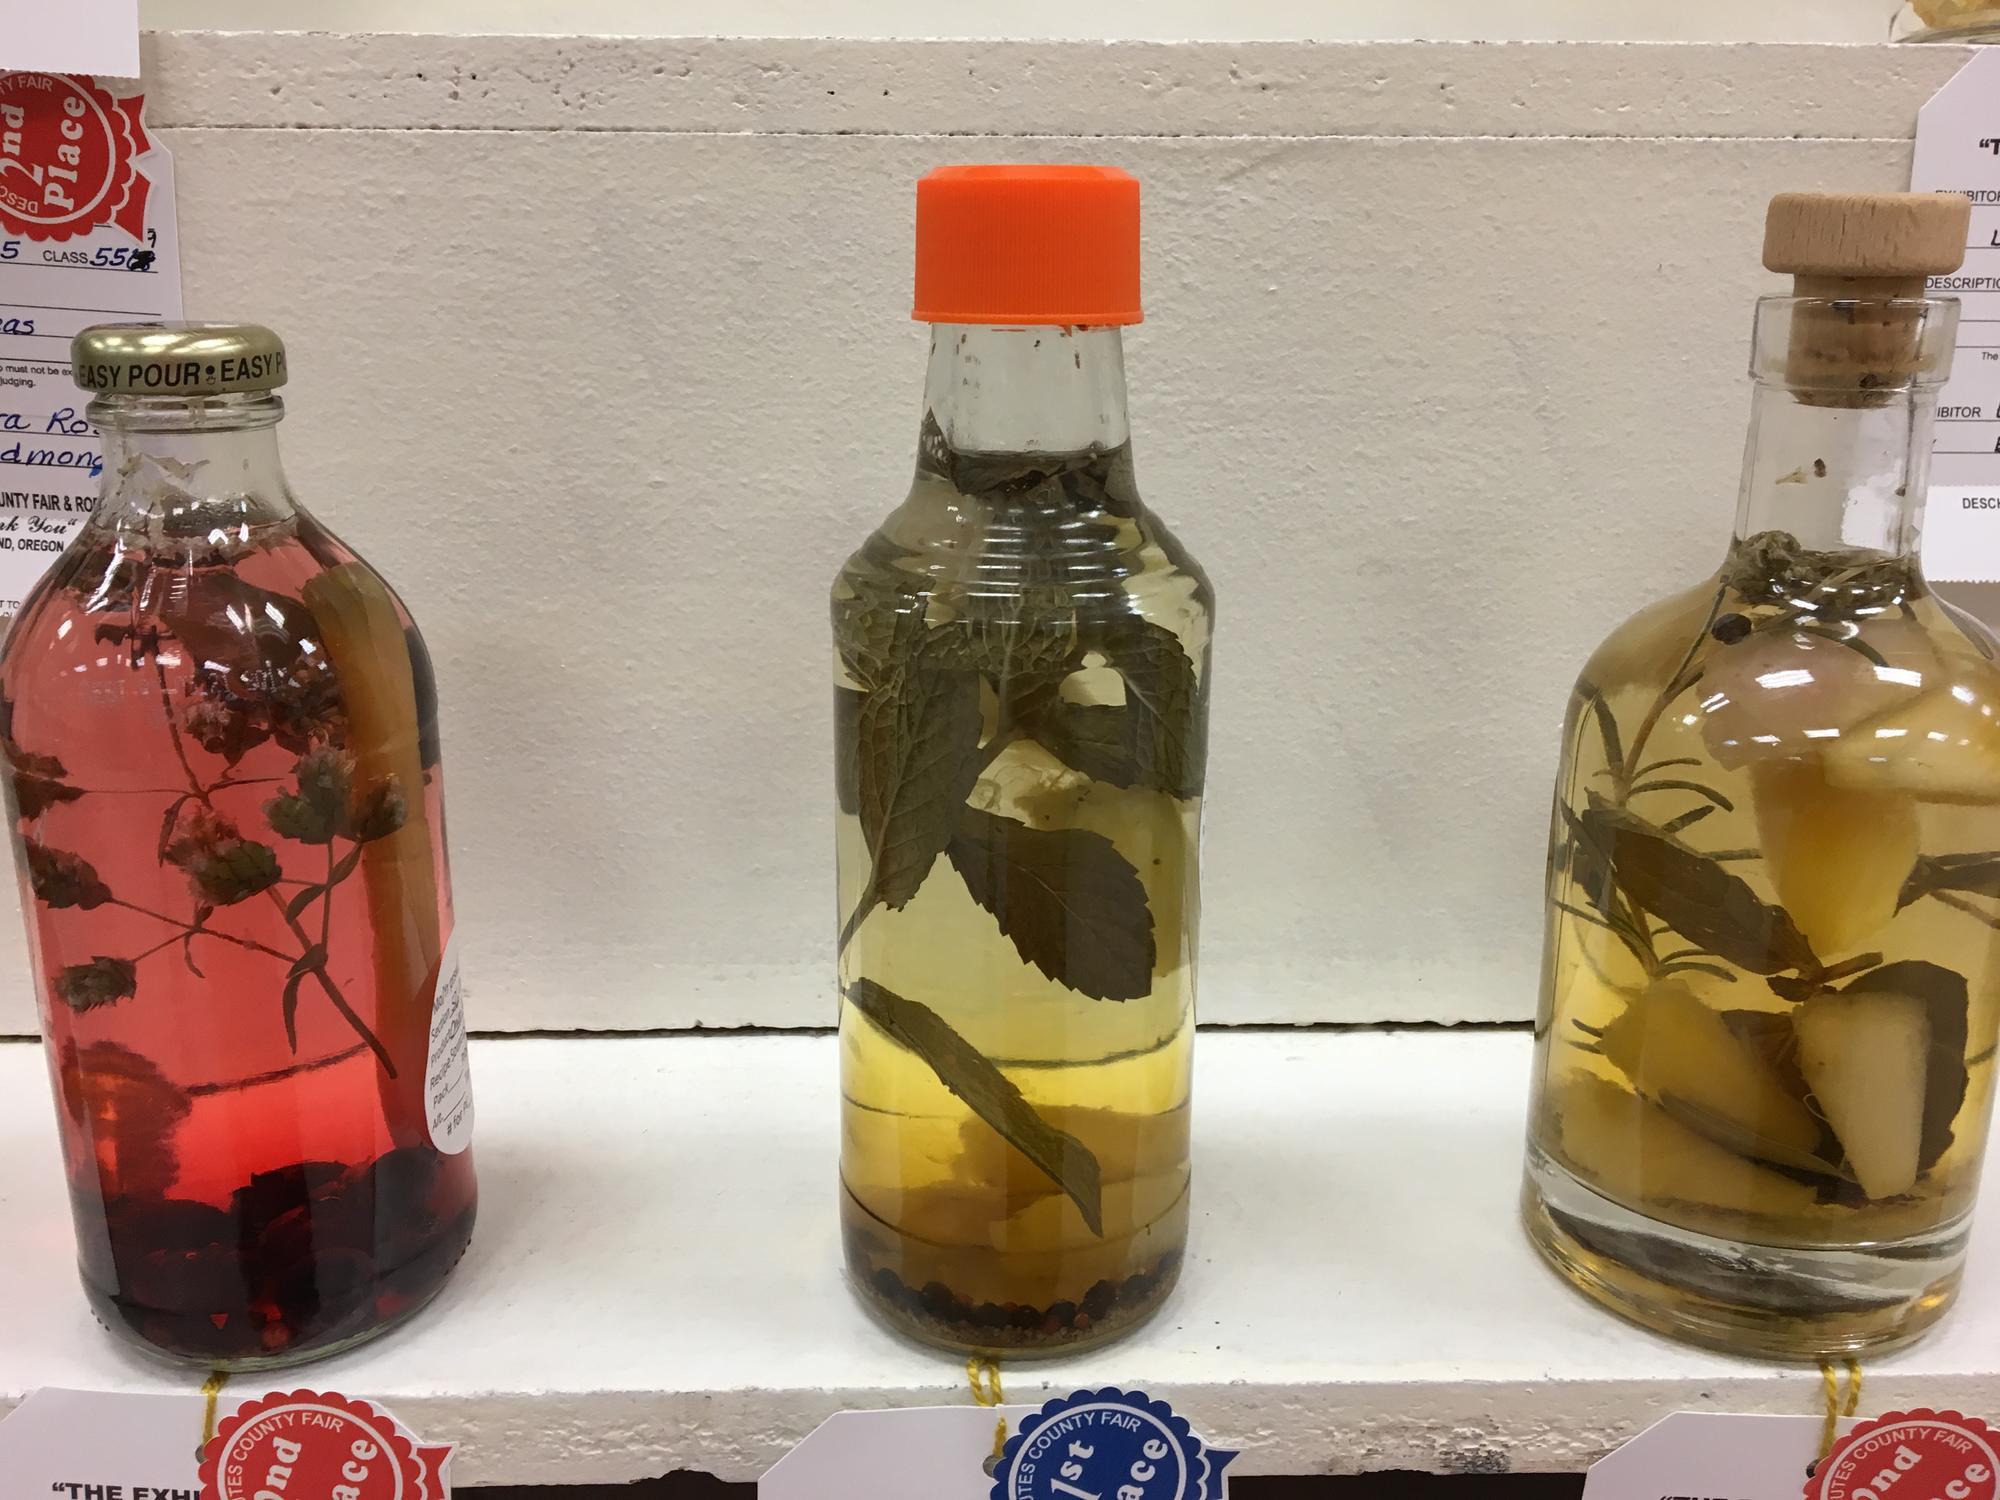 Flavored vinegars display, three bottles